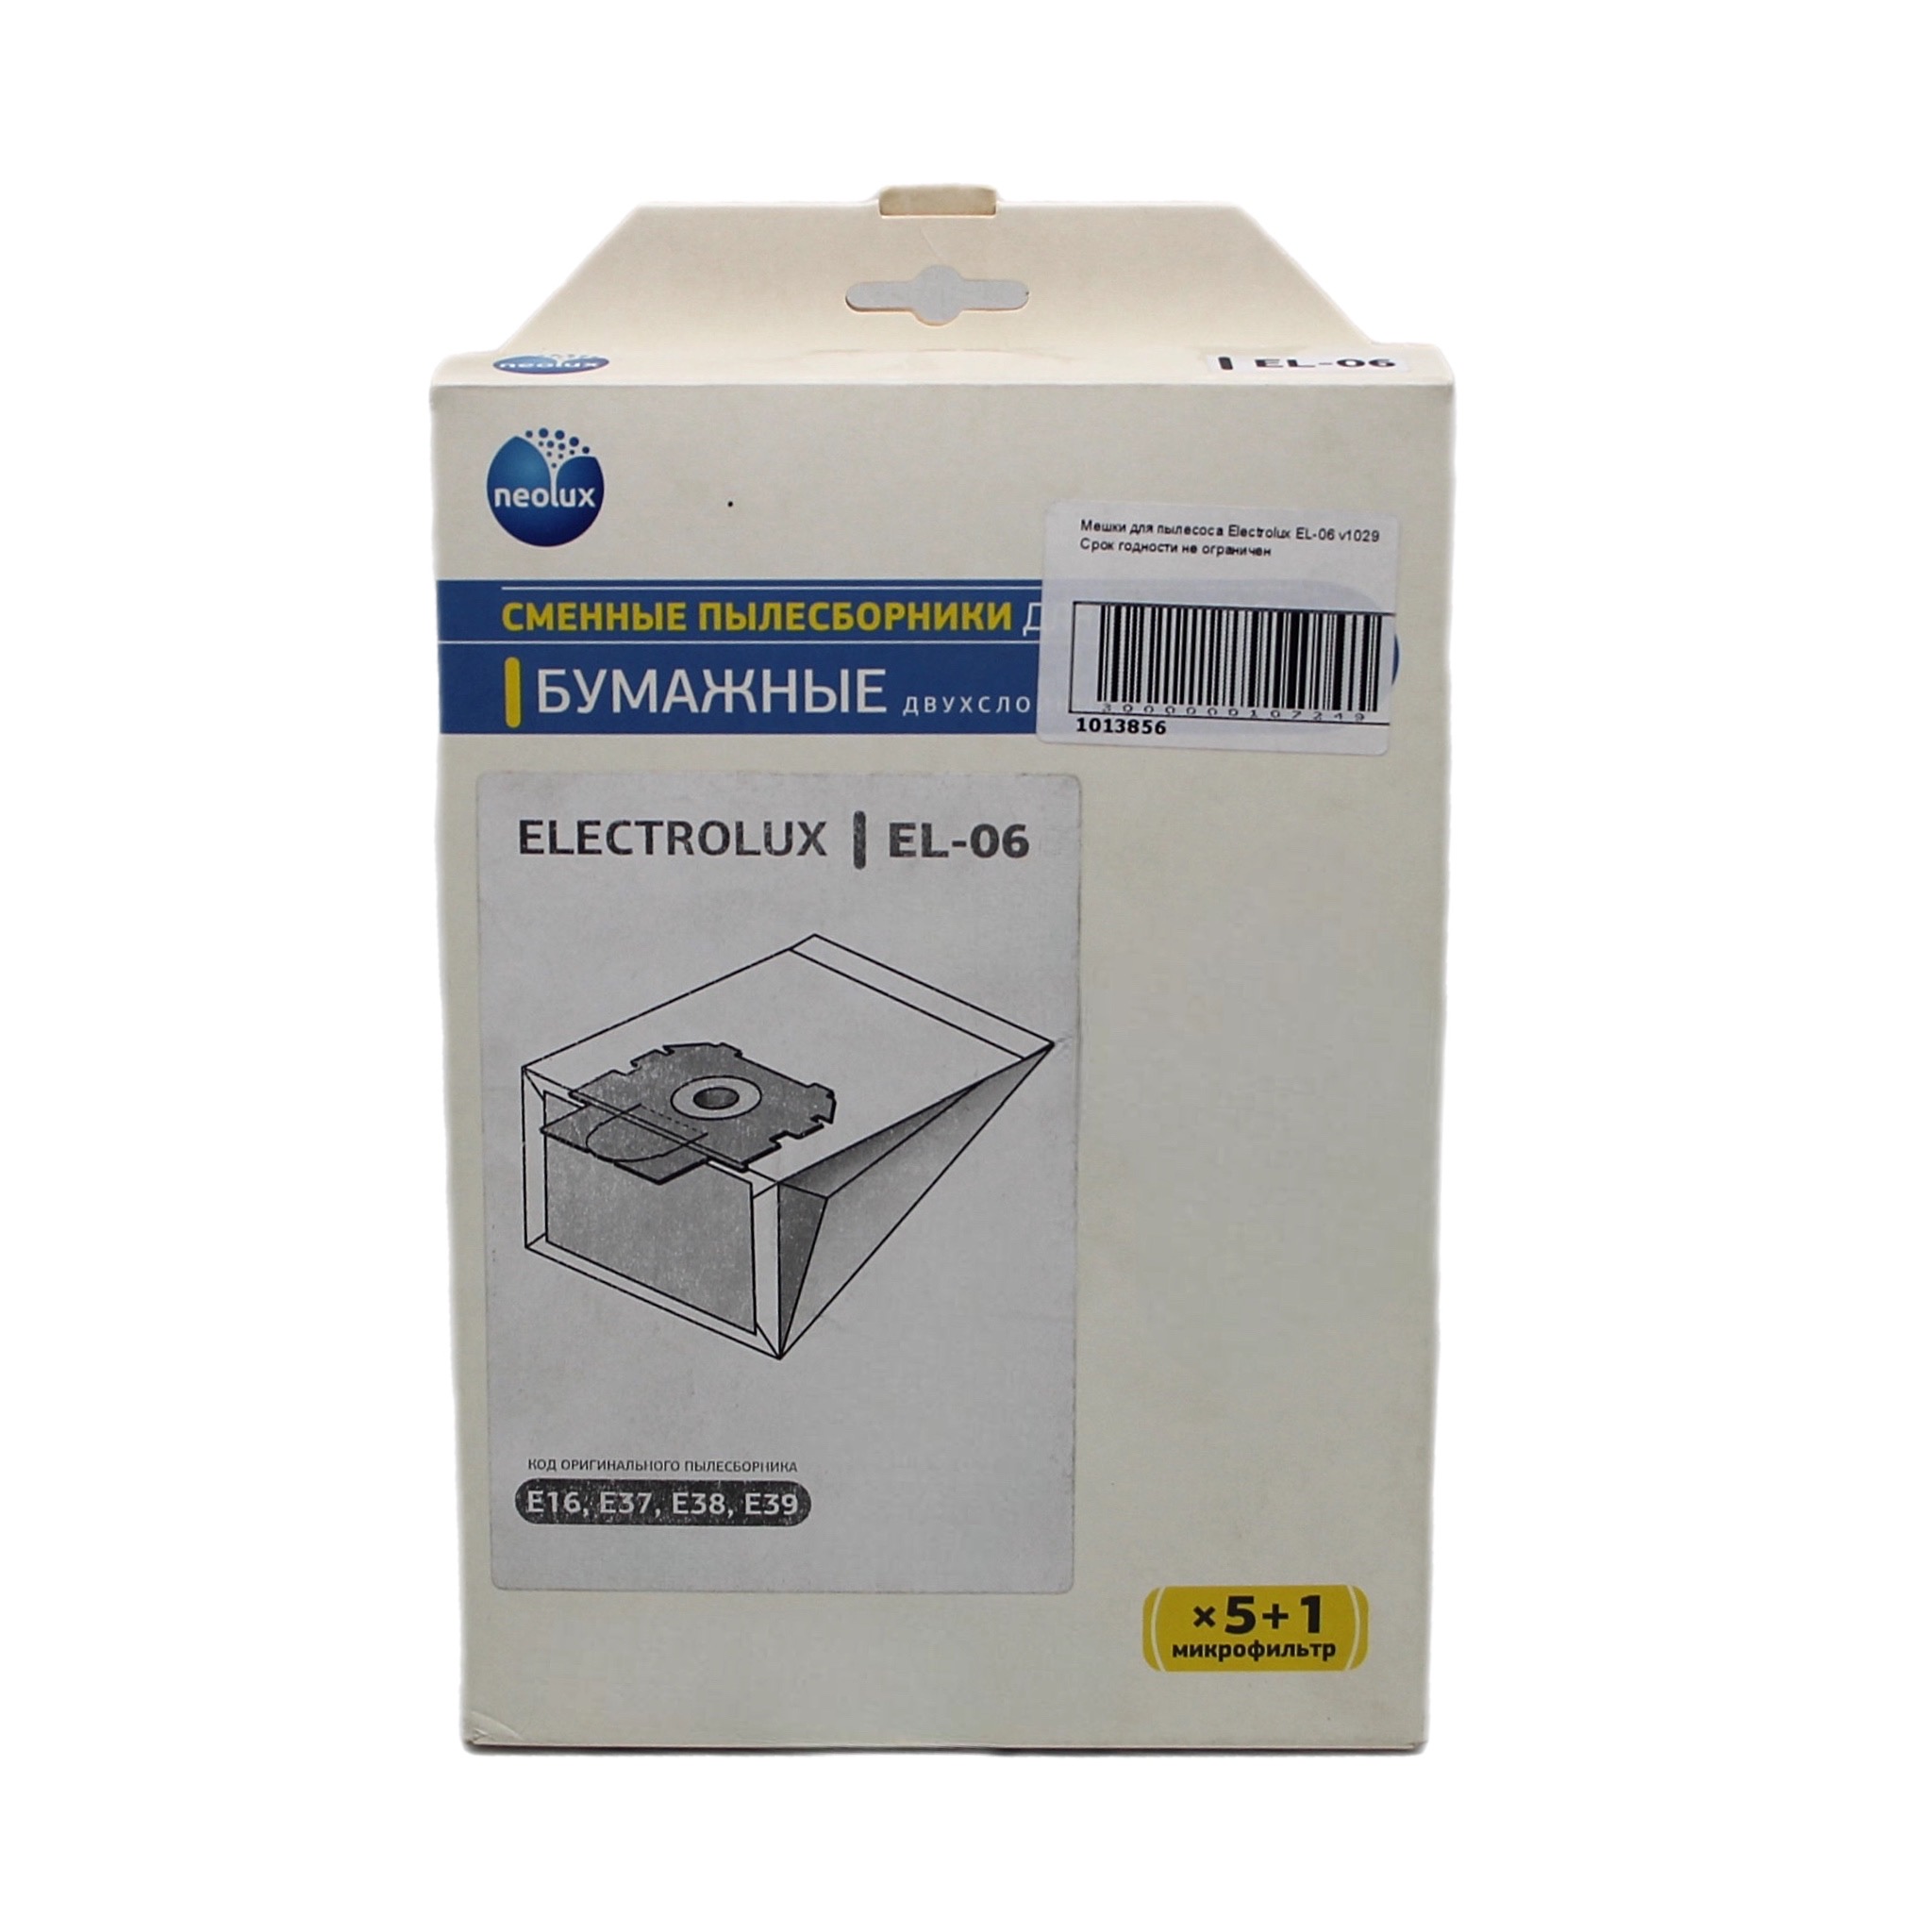 Мешок для бытового пылесоса OEM EL-06 пылесборники бумажные topperr bs 2 5шт 1 микрофильтр